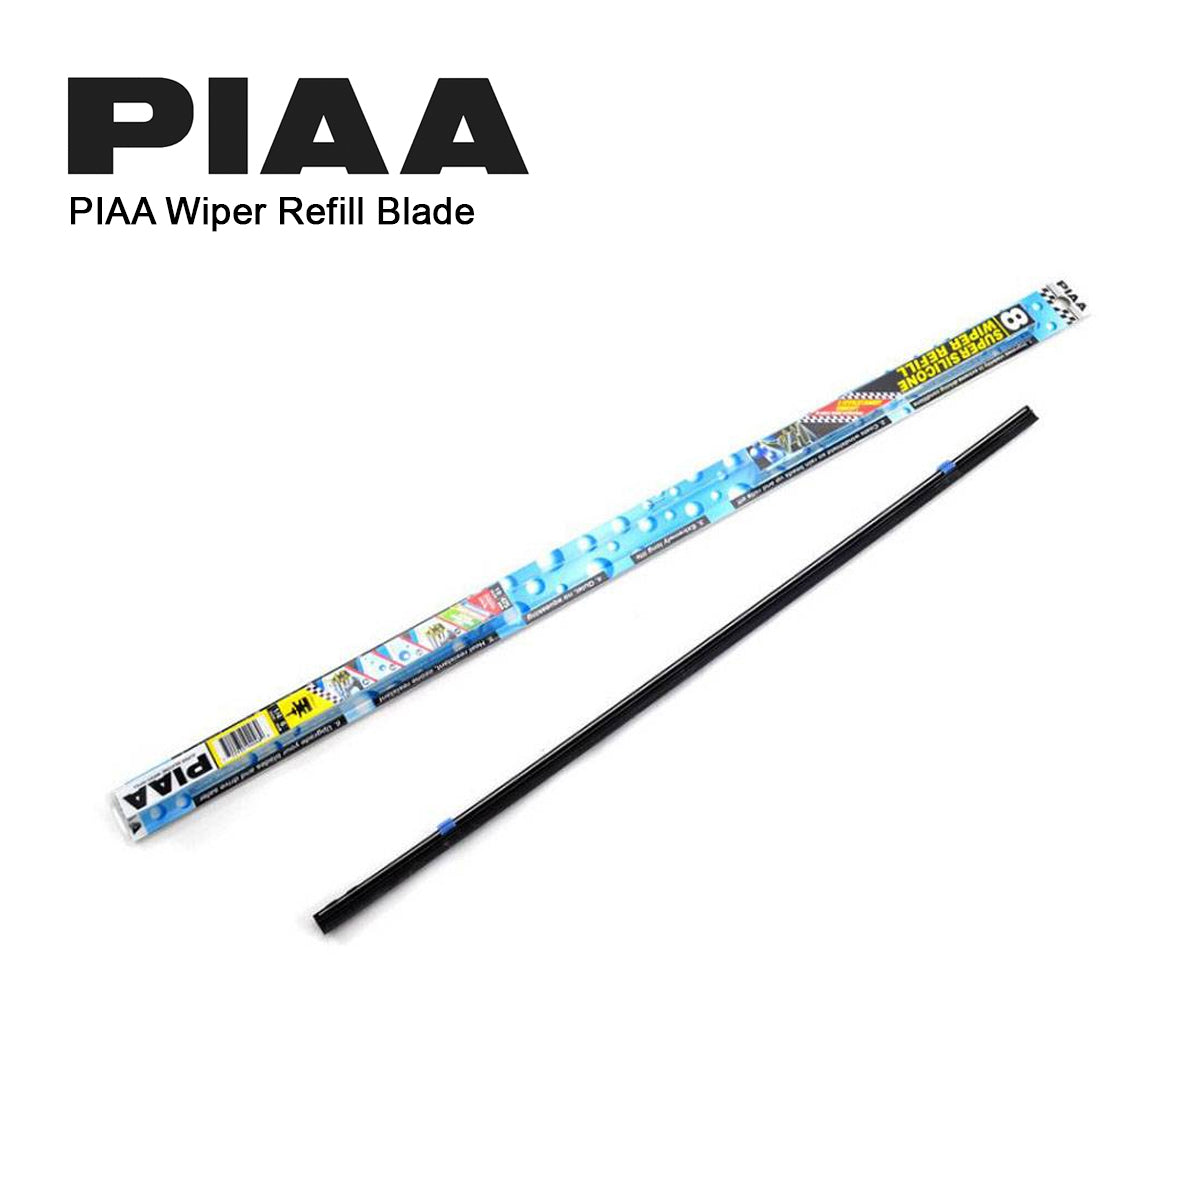 PIAA SILICONE WIPER REFILL for Radix & Aero Vogue Blade ( 21" ) ( 6mm ) (Barcode: 722935940533 )